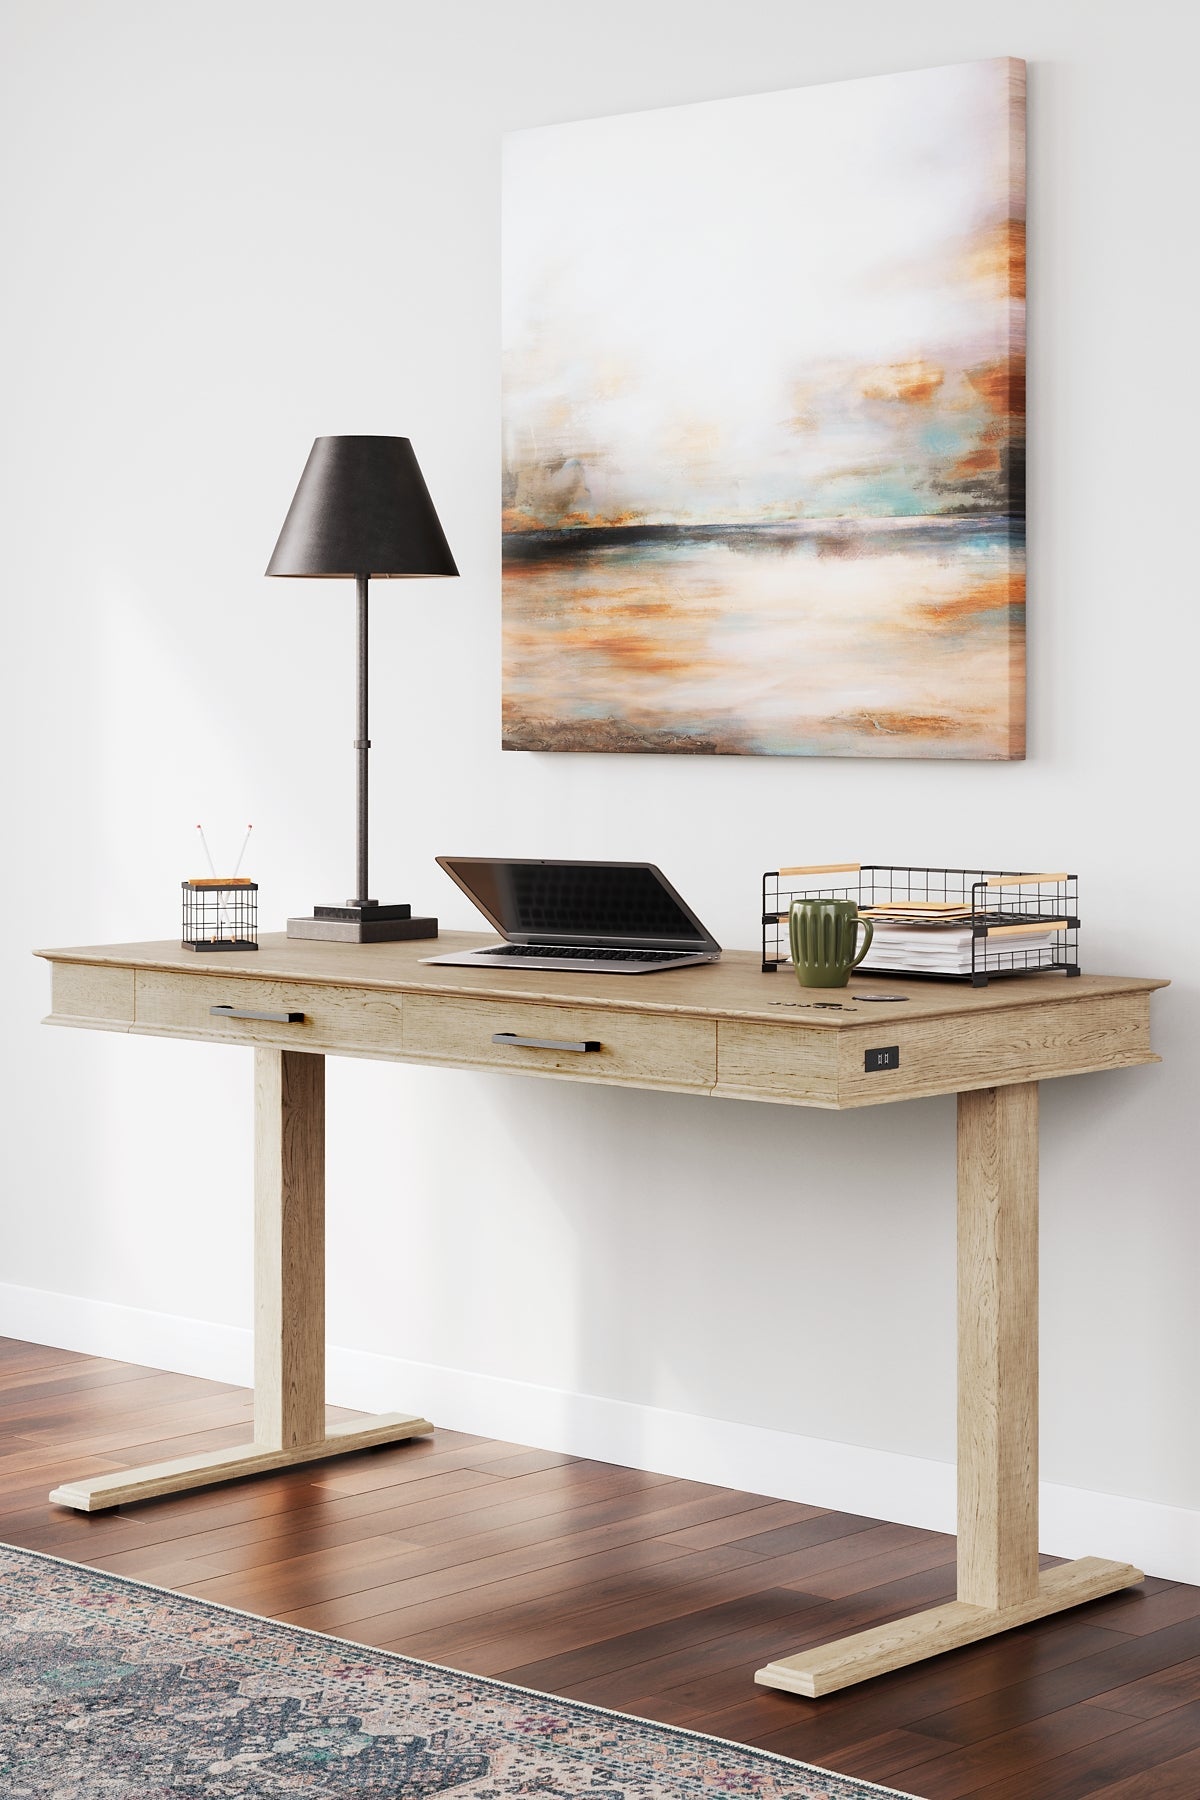 Elmferd Home Office Desk and Storage Smyrna Furniture Outlet